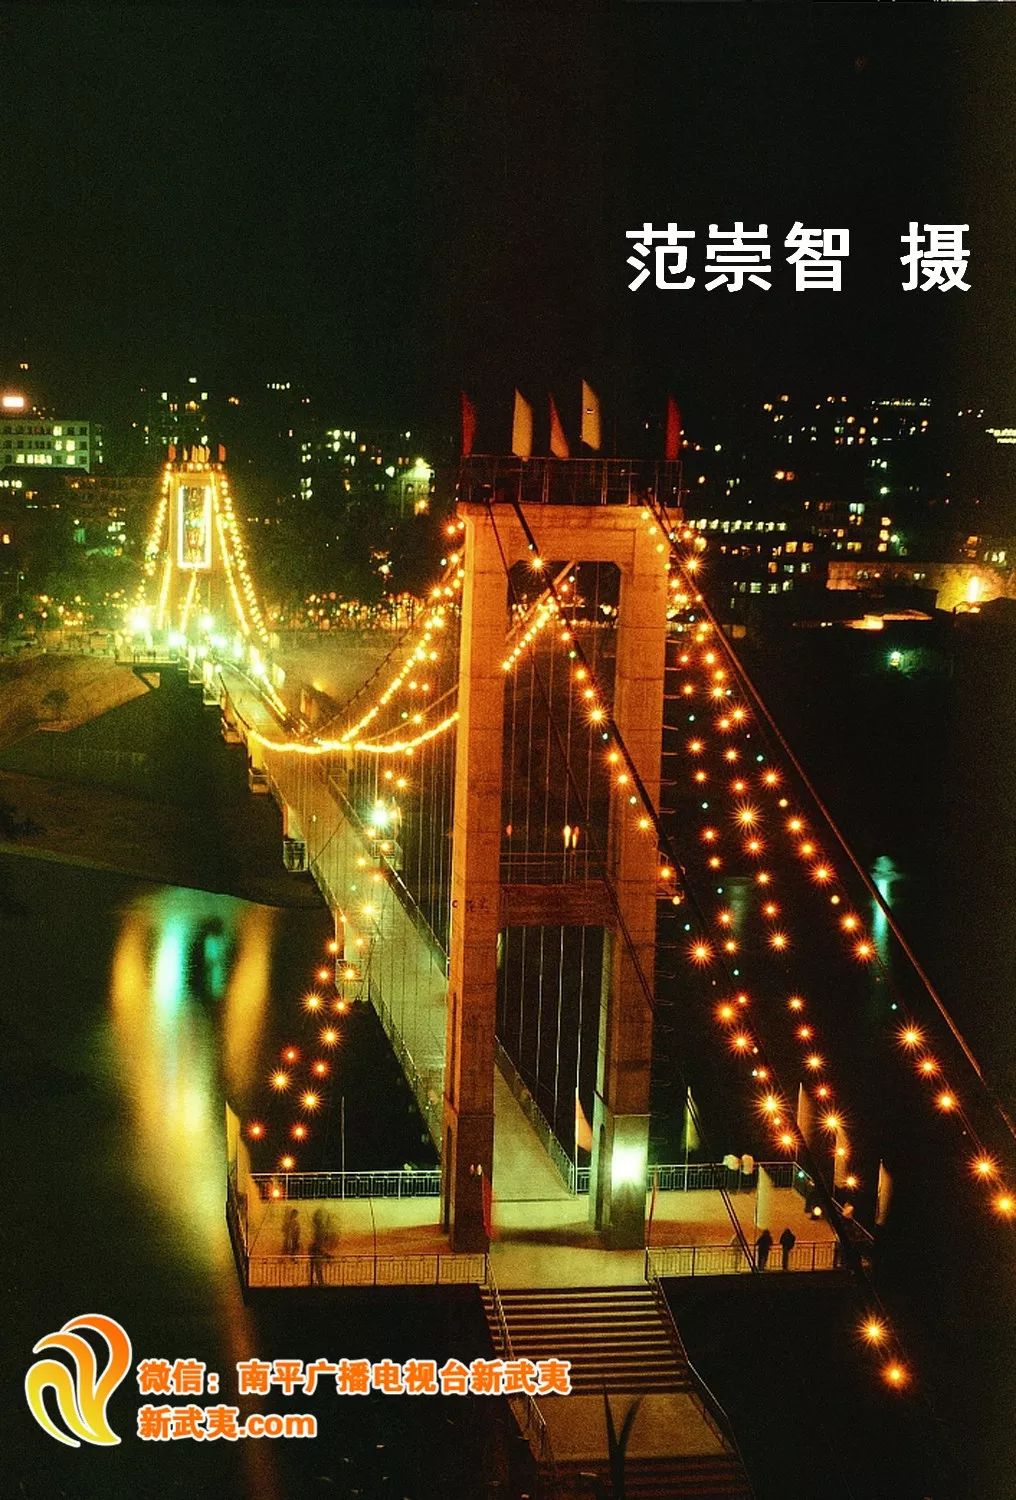 1986年的九峰索桥▲九峰索桥建设中(九峰索桥1983年开始建设,1984